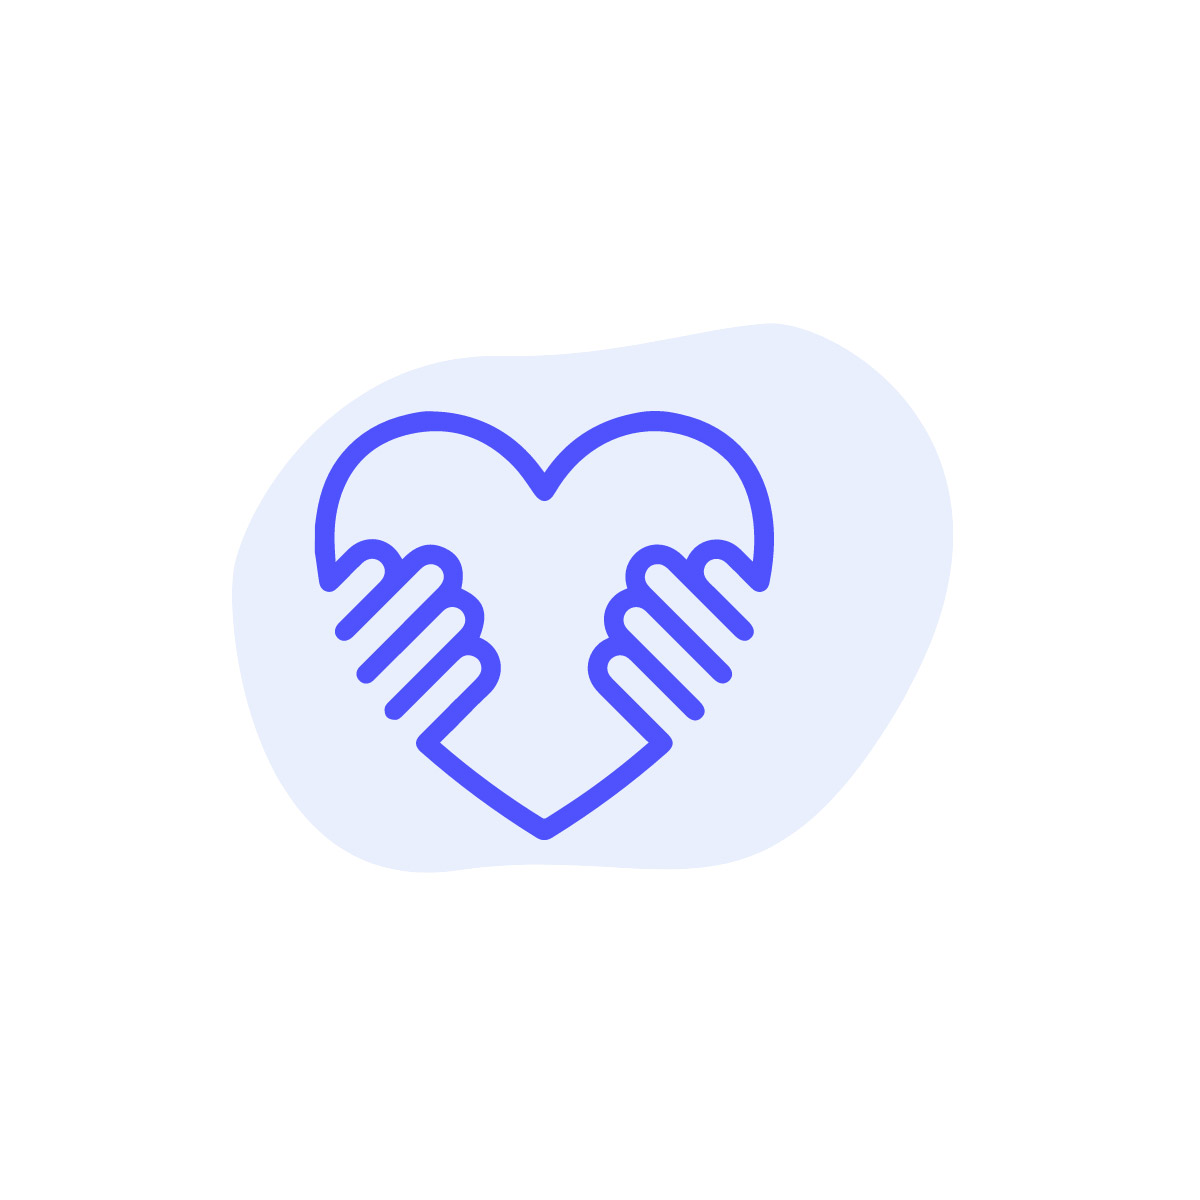 Symbolbild für transparente, offene und ehrliche Kommunikation als Herz dargestellt